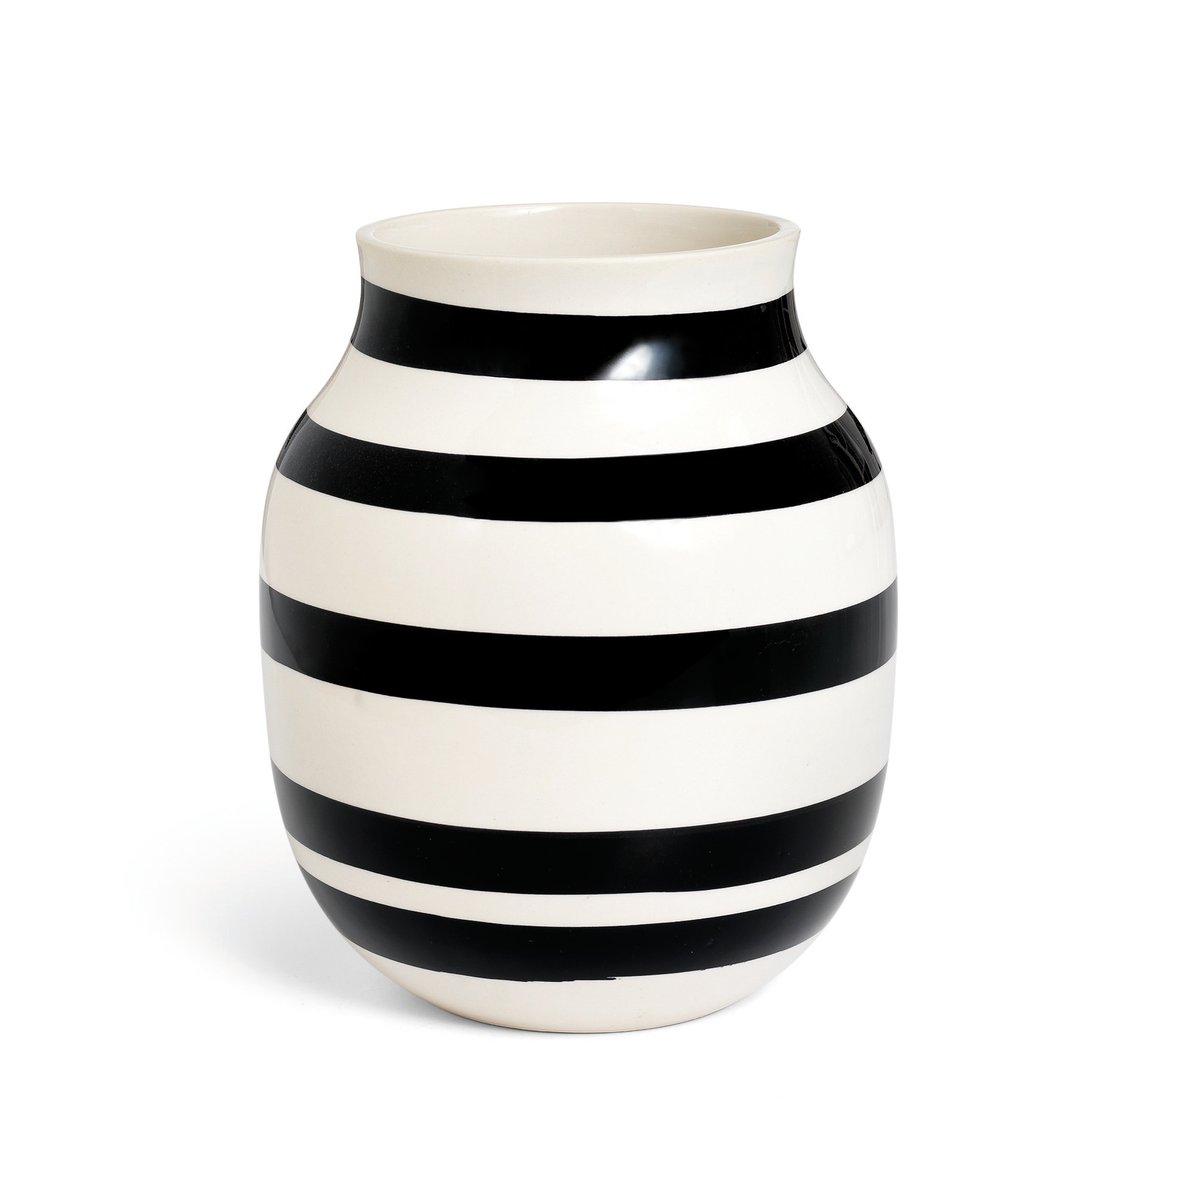 Bilde av Kähler Omaggio vase medium svart